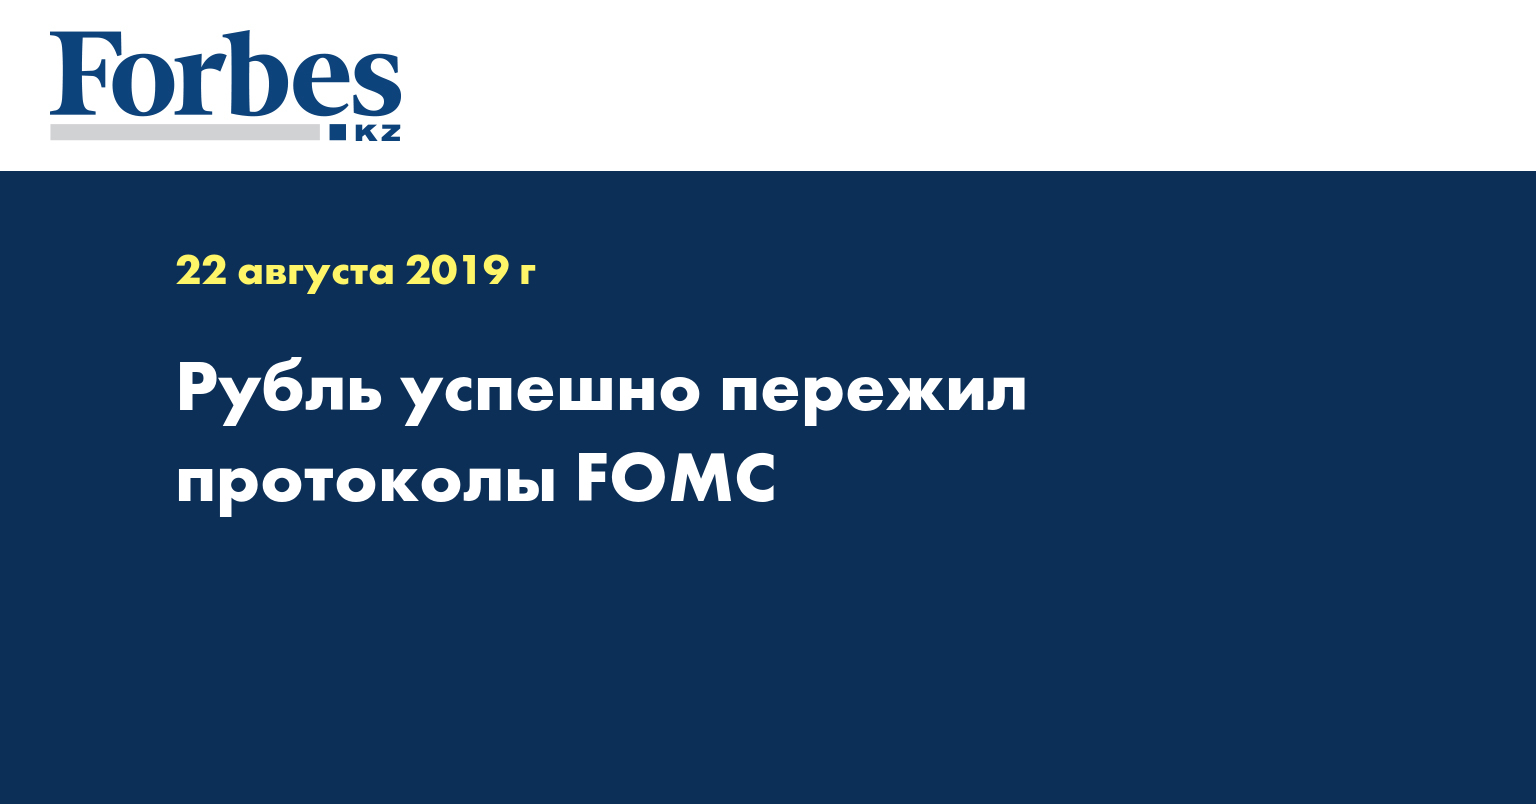 Рубль успешно пережил протоколы FOMC